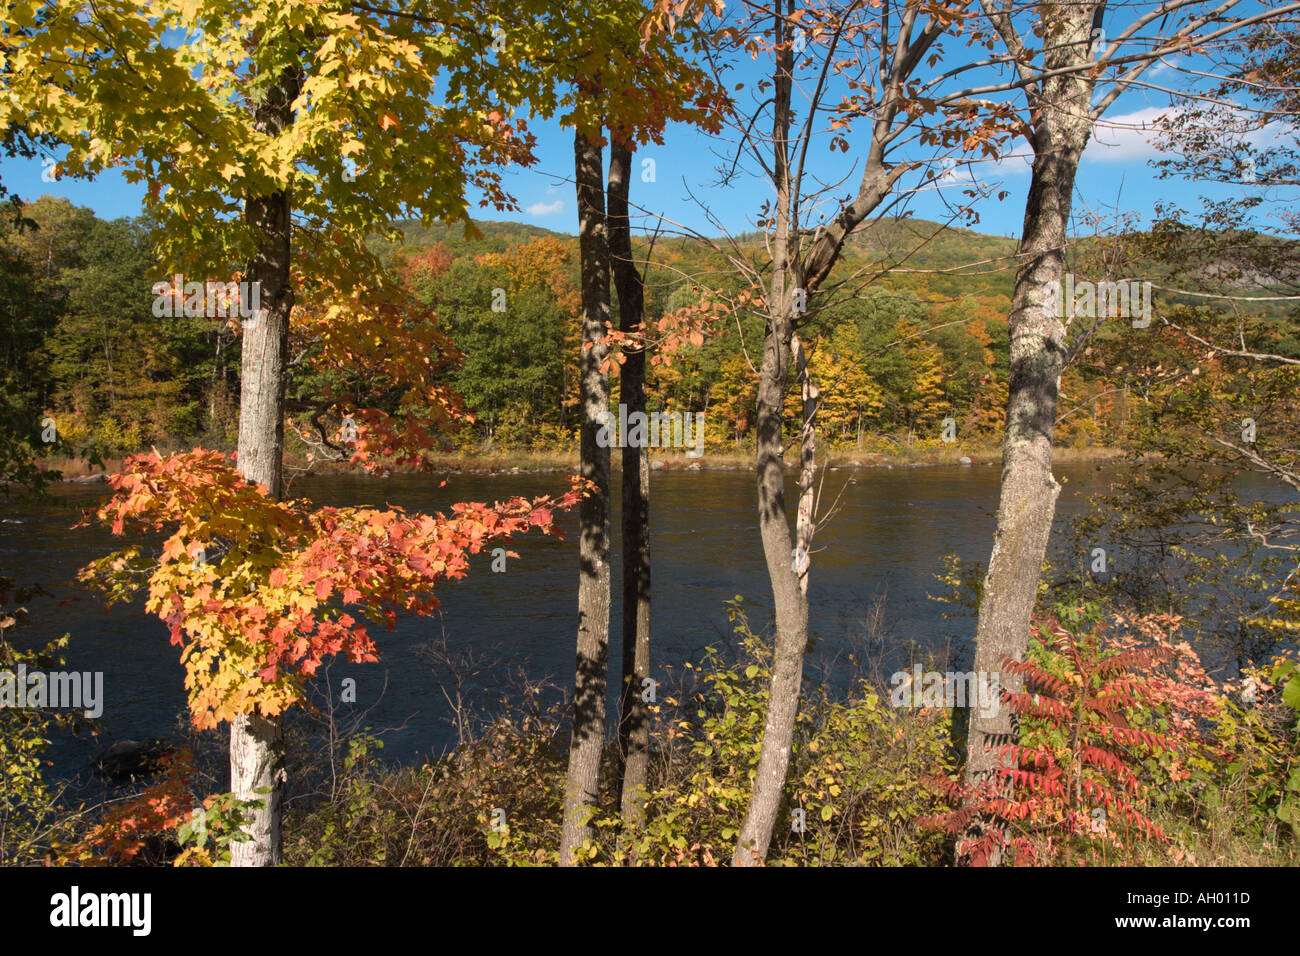 Adirondacks. Fall Foliage by the Hudson River, Adirondack Mountains, New York State, USA Stock Photo